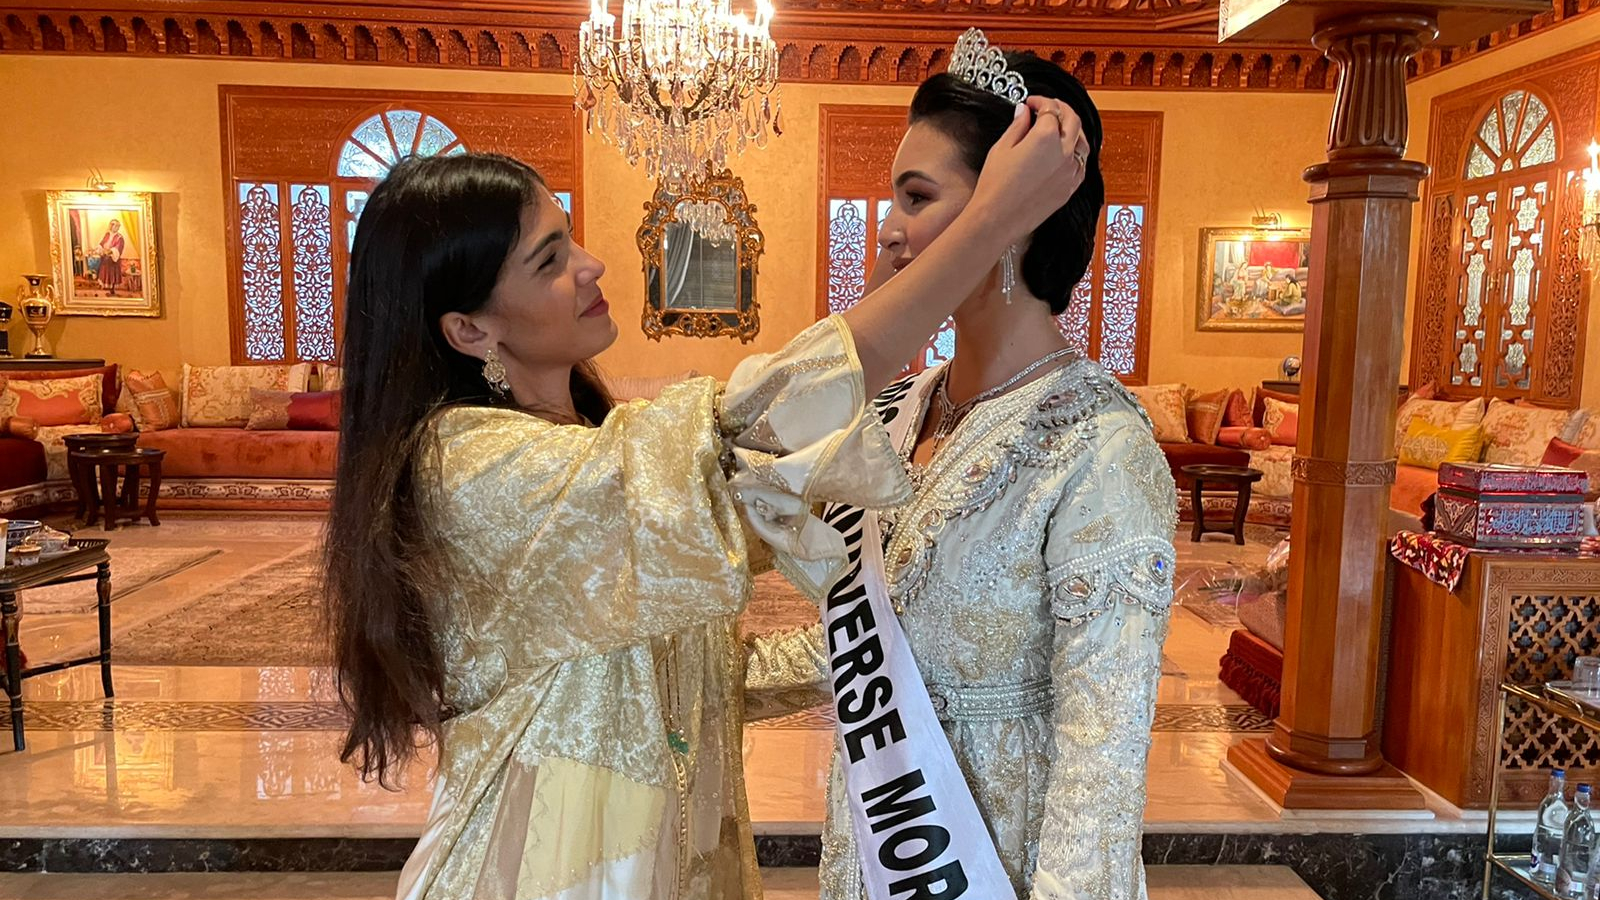 Passation du titre Miss Maroc 2021, entre Fatima-Zahra Khayat (à gauche) et sa première dauphine, la nouvelle Miss Maroc, Kawtar Benhalima  (à droite).
